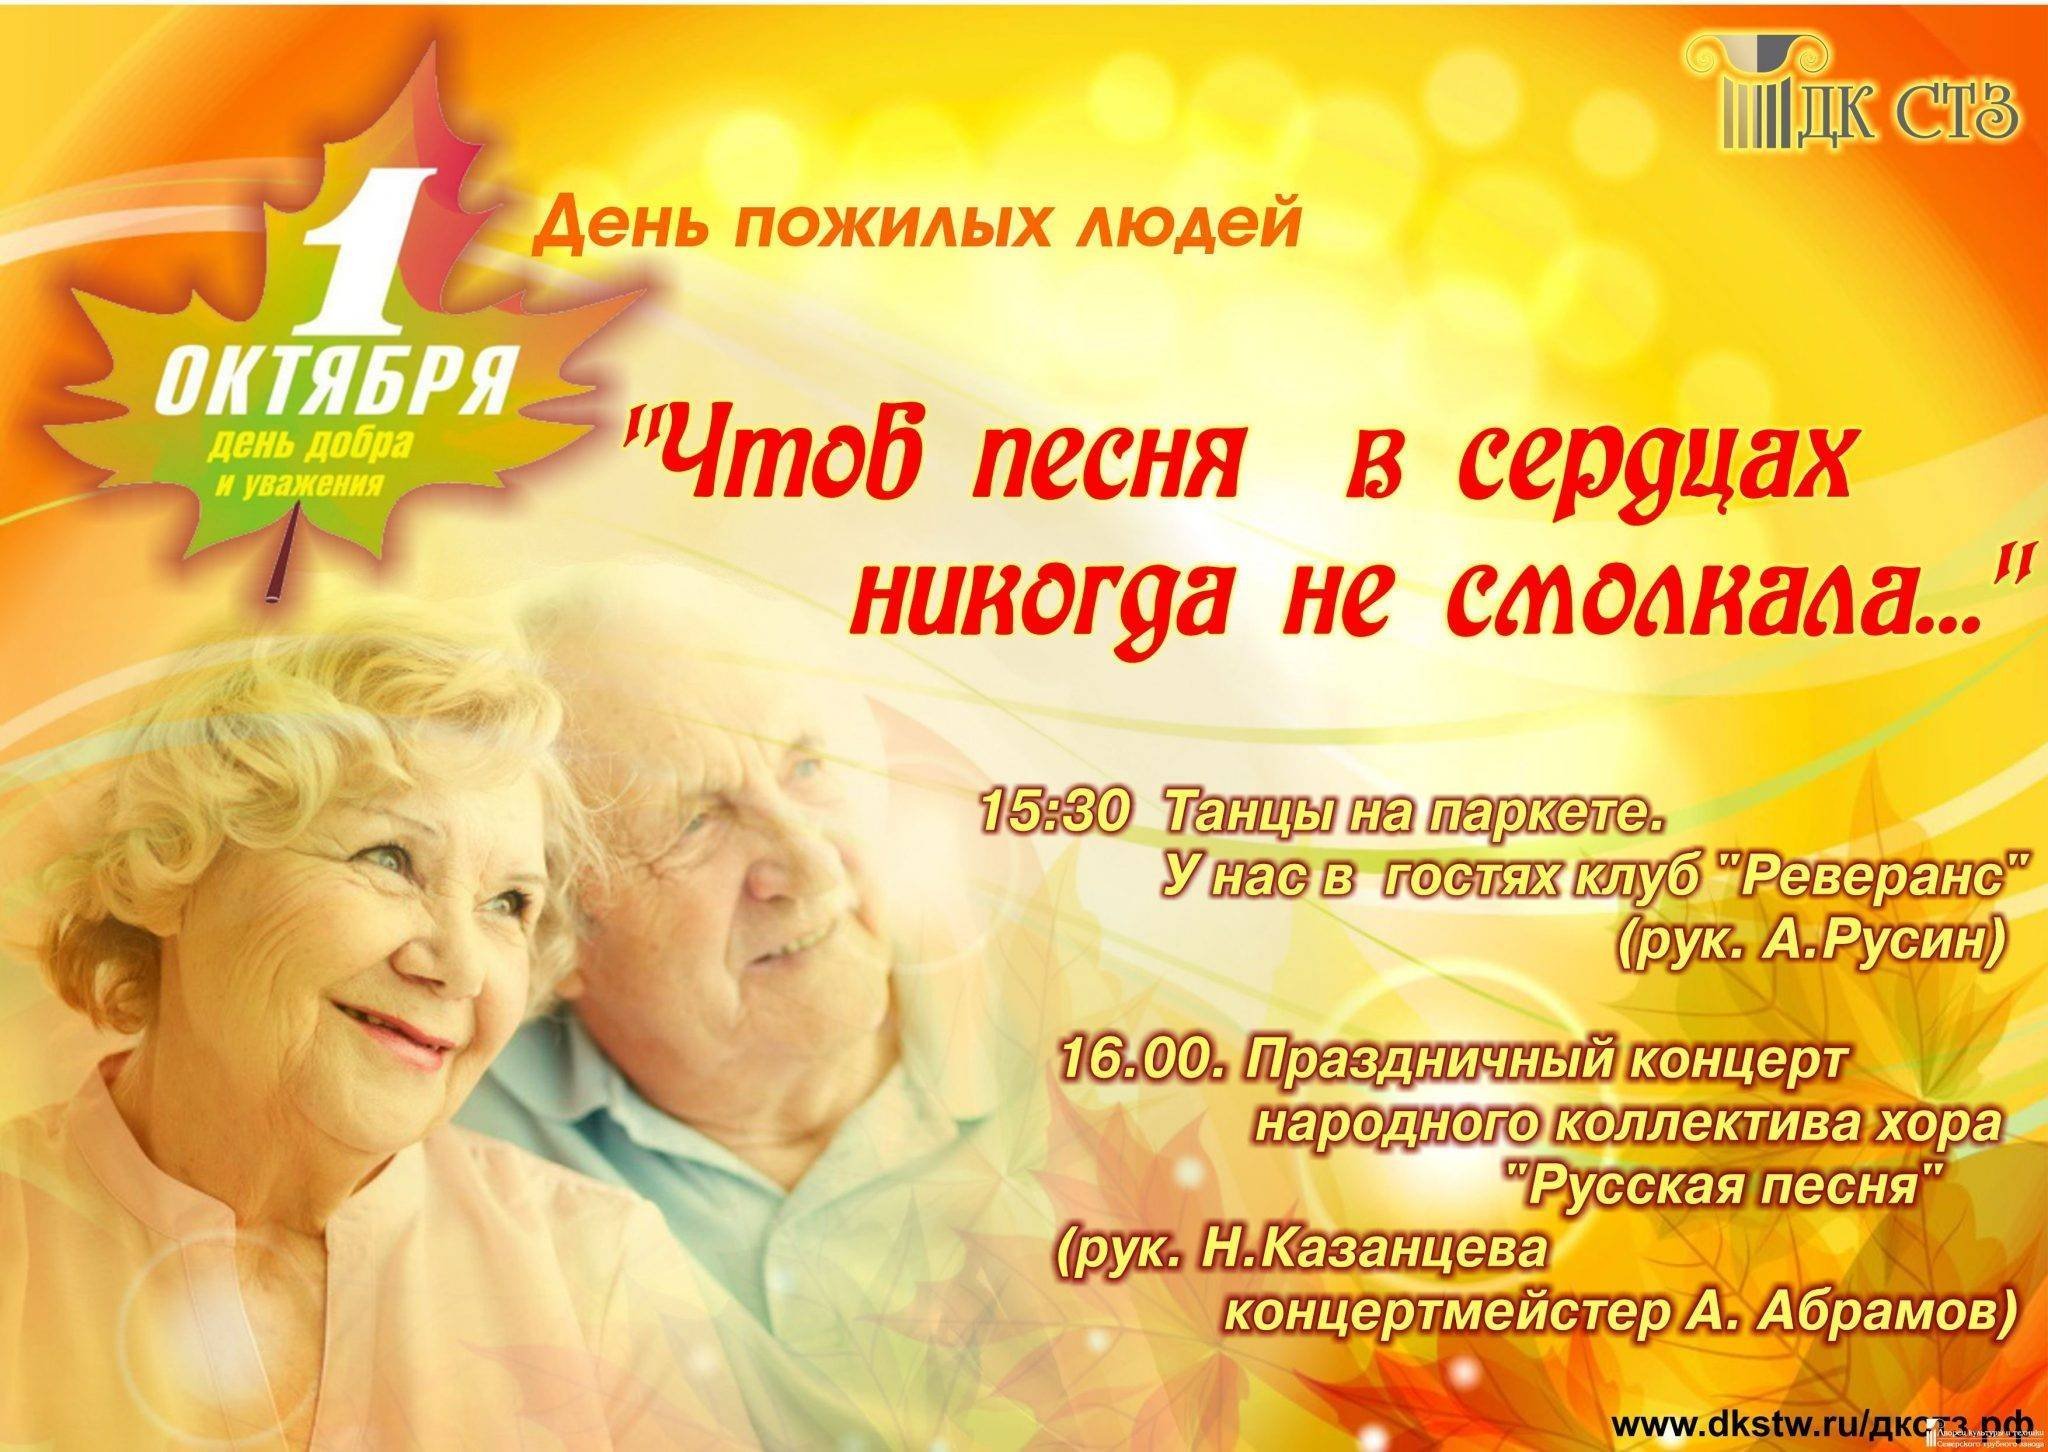 Название дню пожилого человека. День пожилых. Поздравление с днем пожилого человека. Пожелания на день пожилых людей. Праздник день пожилого человека.